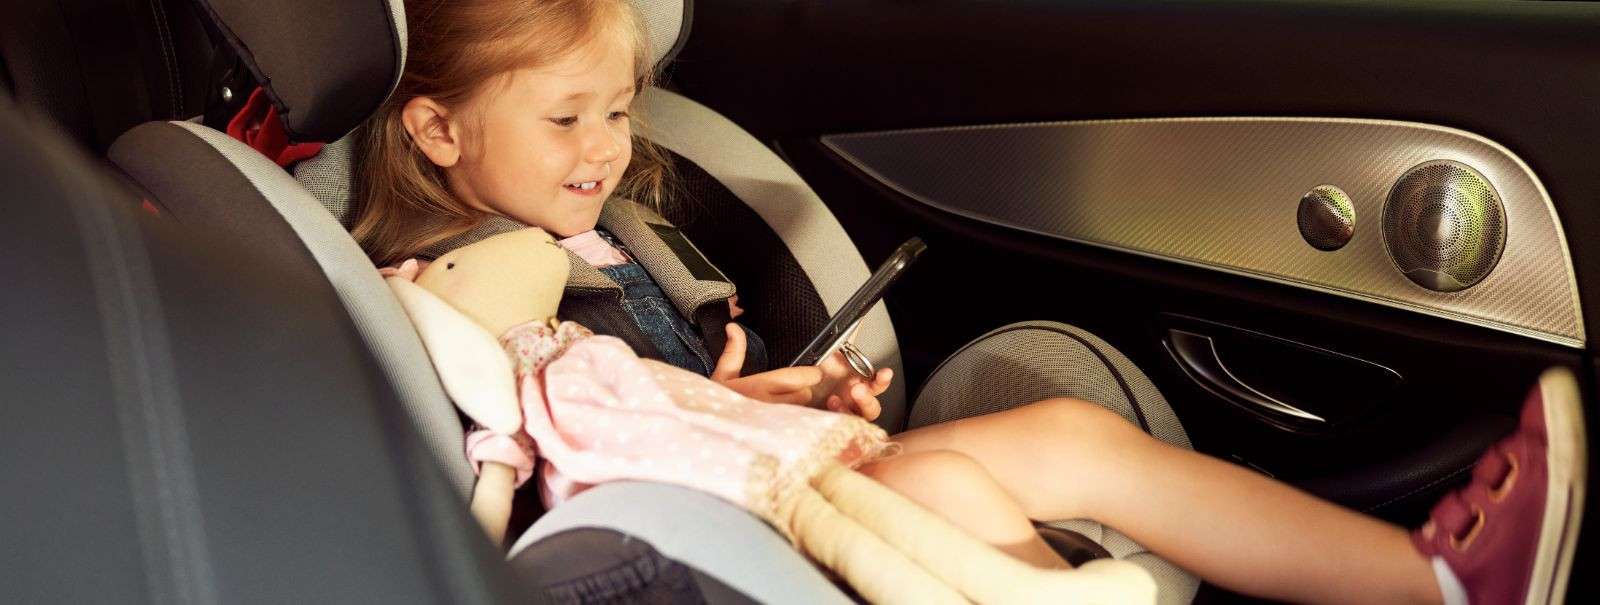 Tagamaks oma lapse ohutust igal autosõidul, on ülioluline. Autoistmed, ...